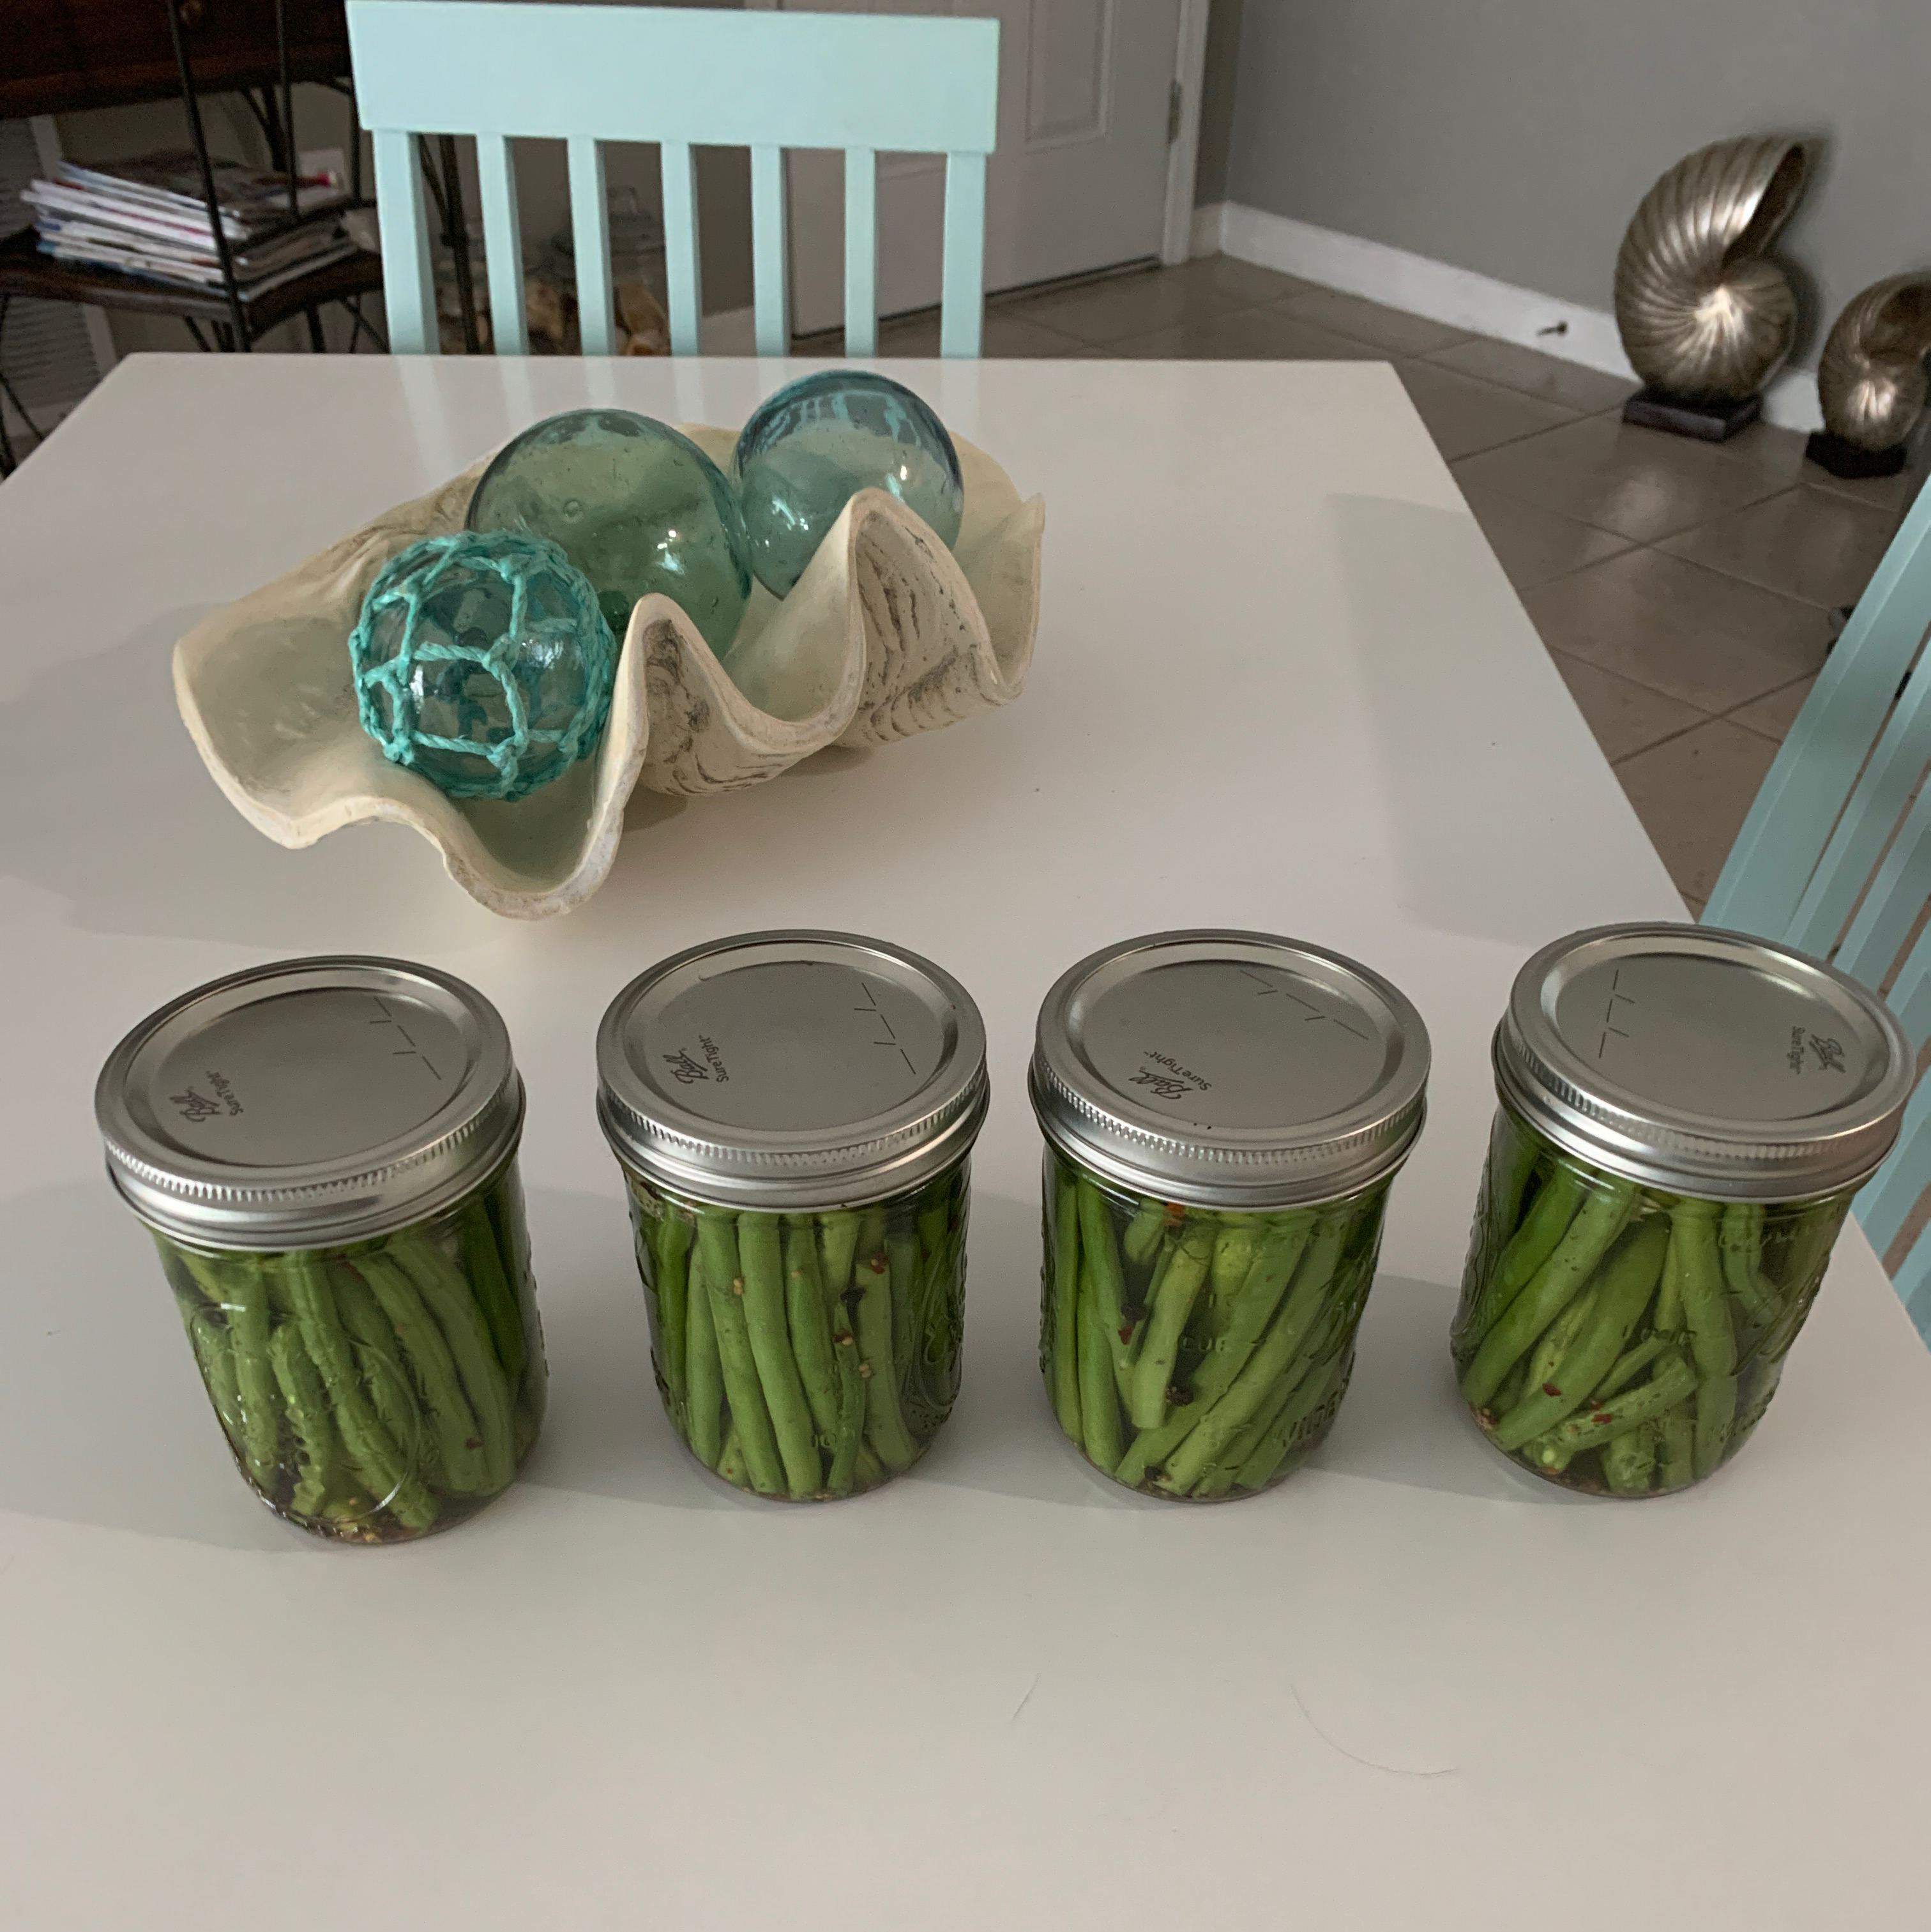 Cold Pickled Green Beans Recipe Allrecipes,Chameleon Petsmart